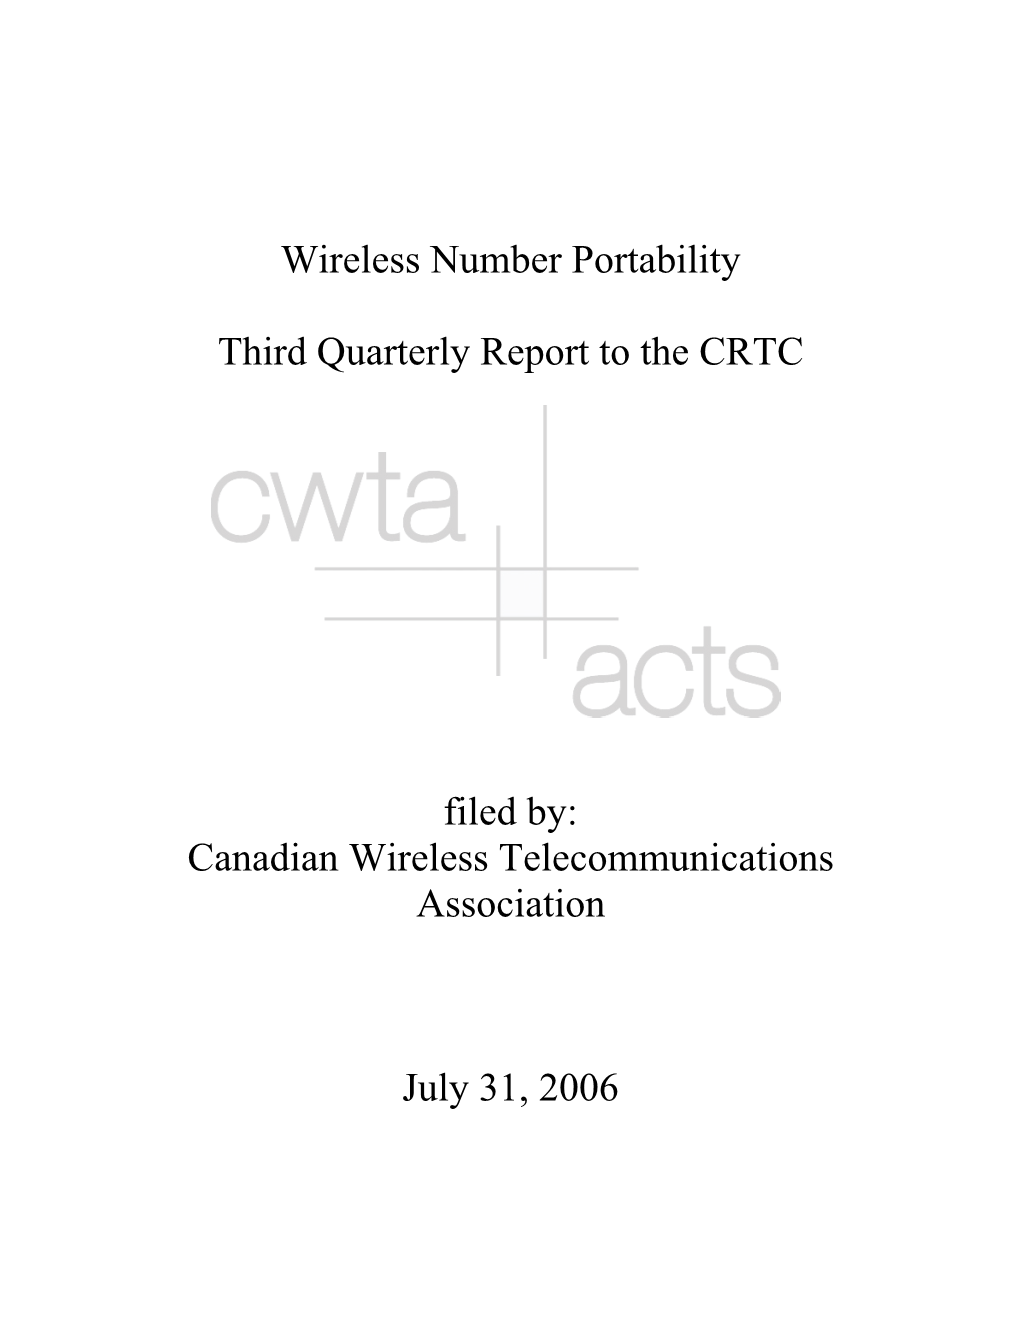 Canadian Wireless Telecommunications Association July